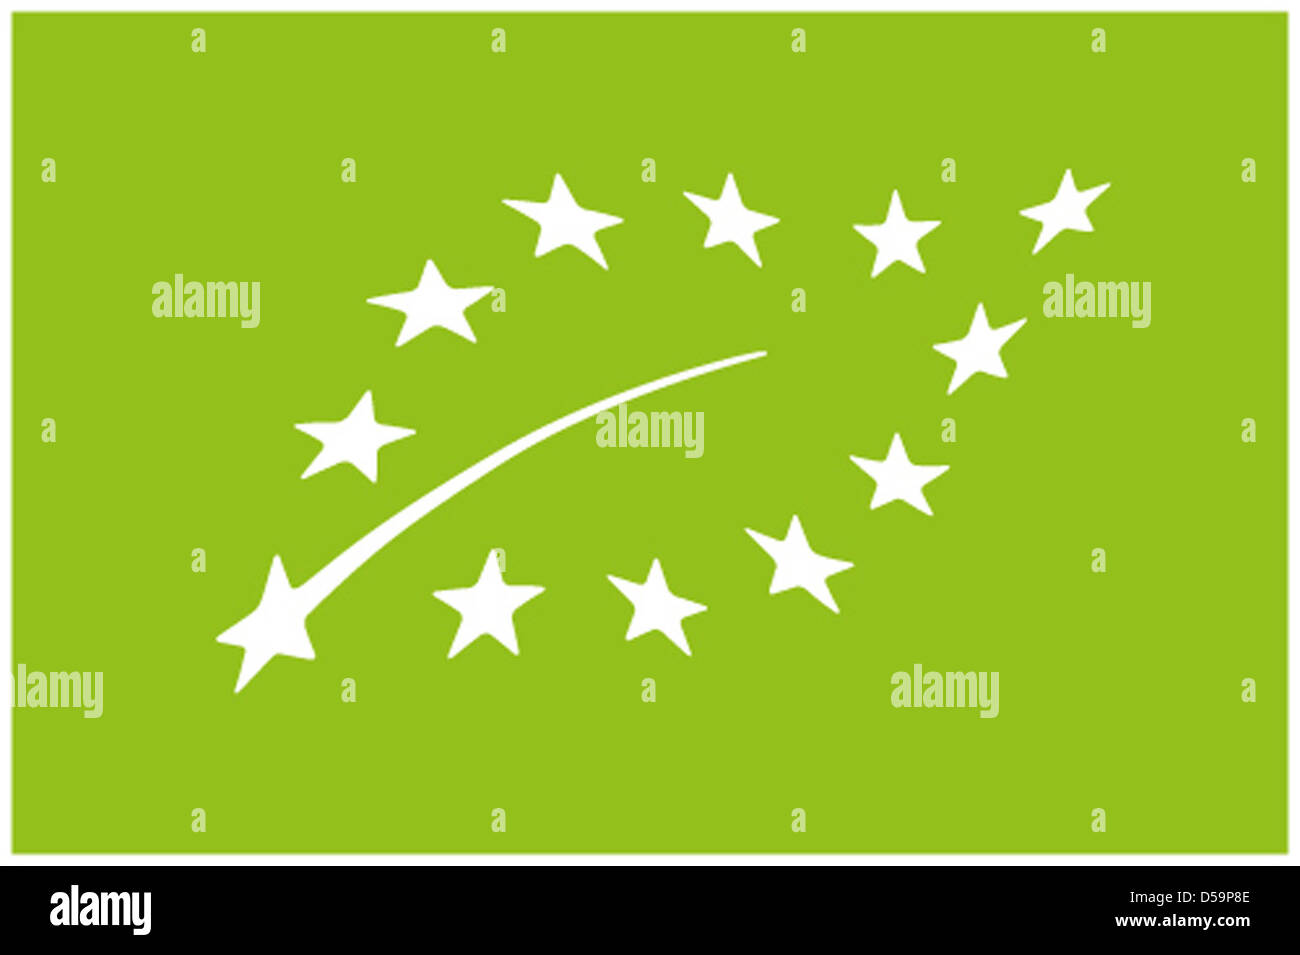 Eine EU-Handout-Bild vom 29. Juni 2010 zeigt ein neuen Zeichen für die Verbraucher in Europa. Ab 1. Juli 2010, werden durch das neue Bio-Zertifizierung der EU ökologisch produzierte Lebensmittel gekennzeichnet werden. Das Logo verfügt über ein Blatt mit 12 weißen Sternen auf grünem Grund. Es gibt Lebensmittel, die den Anforderungen für ökologische Produktion. Das deutsche Zertifikat mit sechs Ecken macht das gleiche Stockfoto